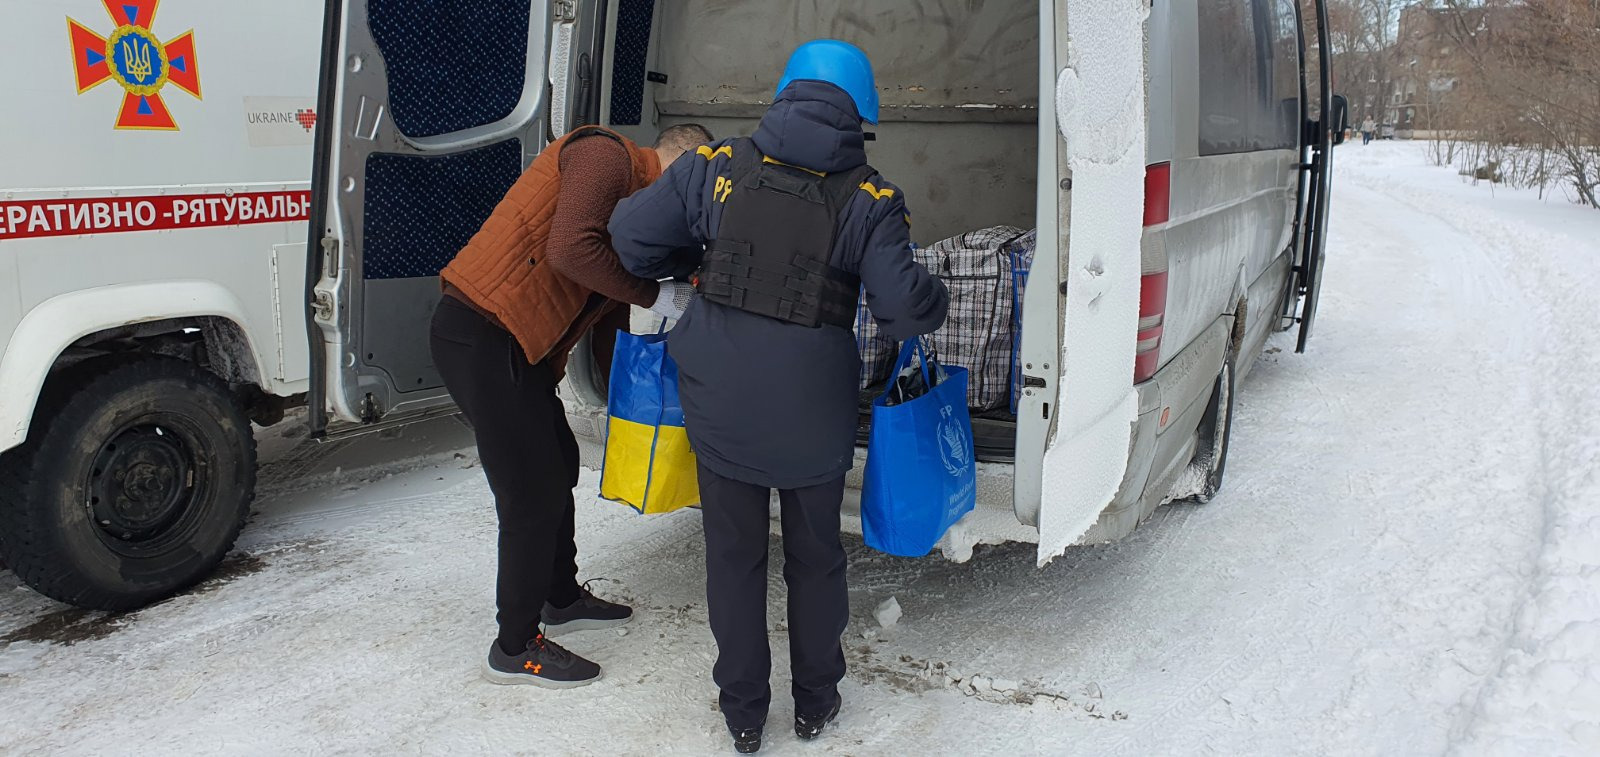 Из Покровского и Бахмутского районов спасатели за день помогли эвакуироваться более 40 людям (ФОТО) 2